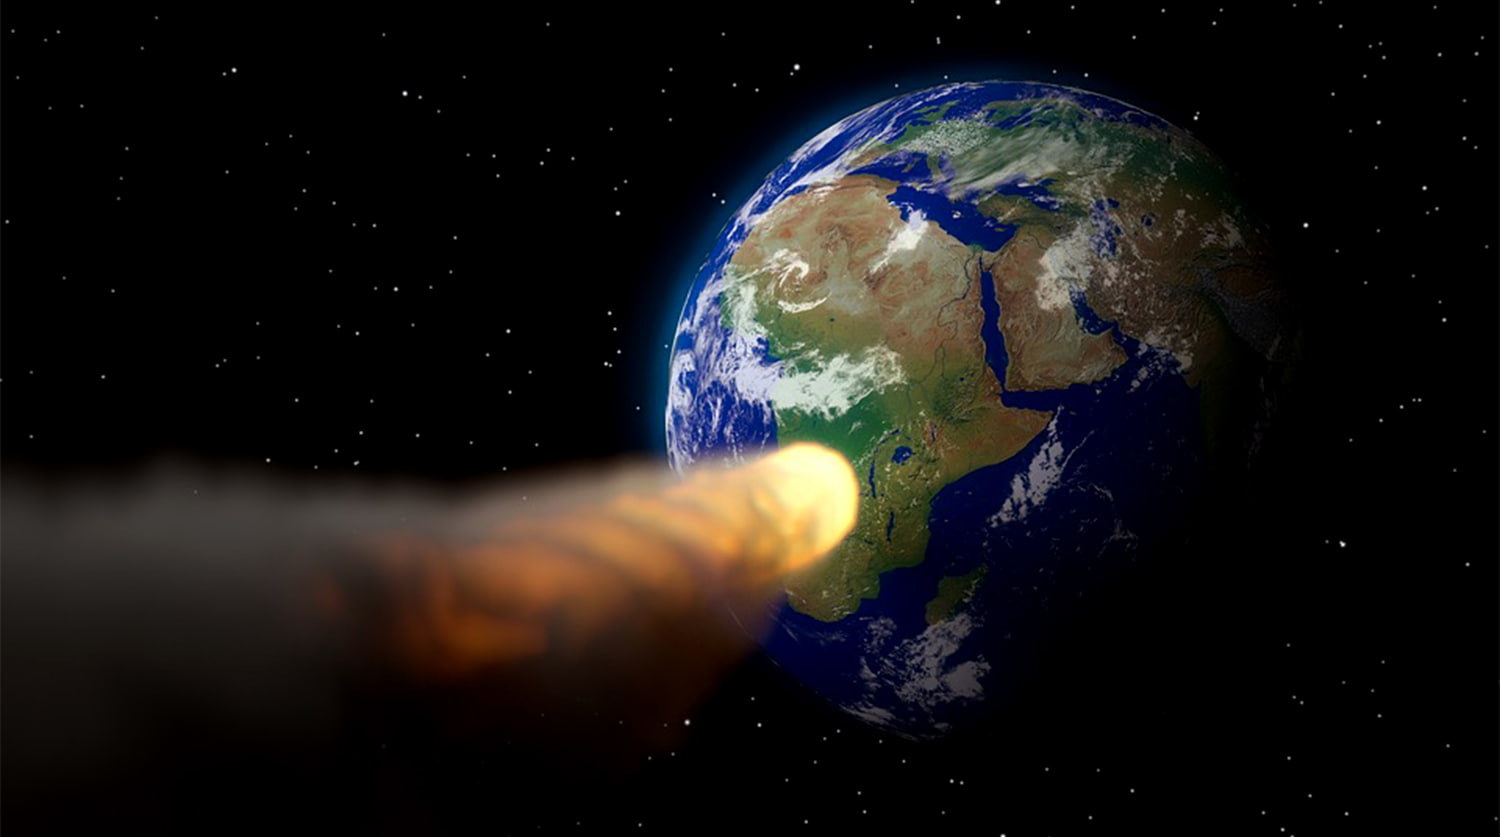 היכולת לזהות אסטרואידים גם כשהם קרובים יחסית לכדור הארץ, ובמהירות גבוהה מאוד. אילוסטרציה: pixabay